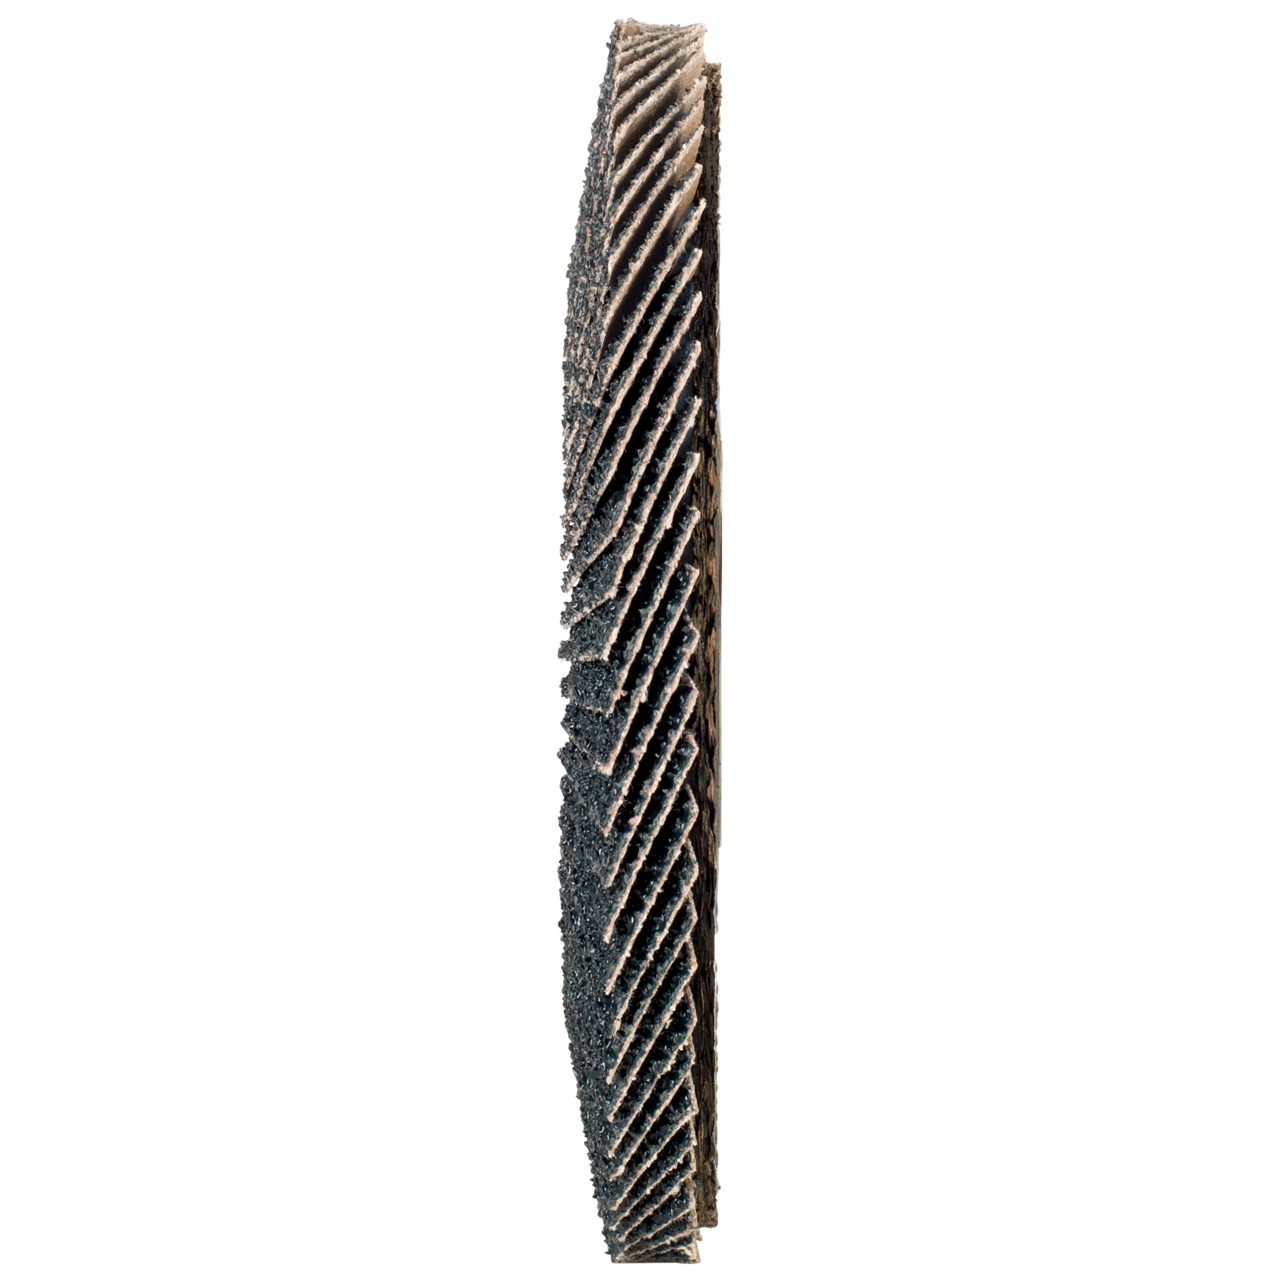 TYROLIT Fächerscheibe DxH 178x22,2 2in1 für Stahl & Edelstahl, P60, Form: 28A - gerade Ausführung (Glasfaserträgerkörperausführung), Art. 668697